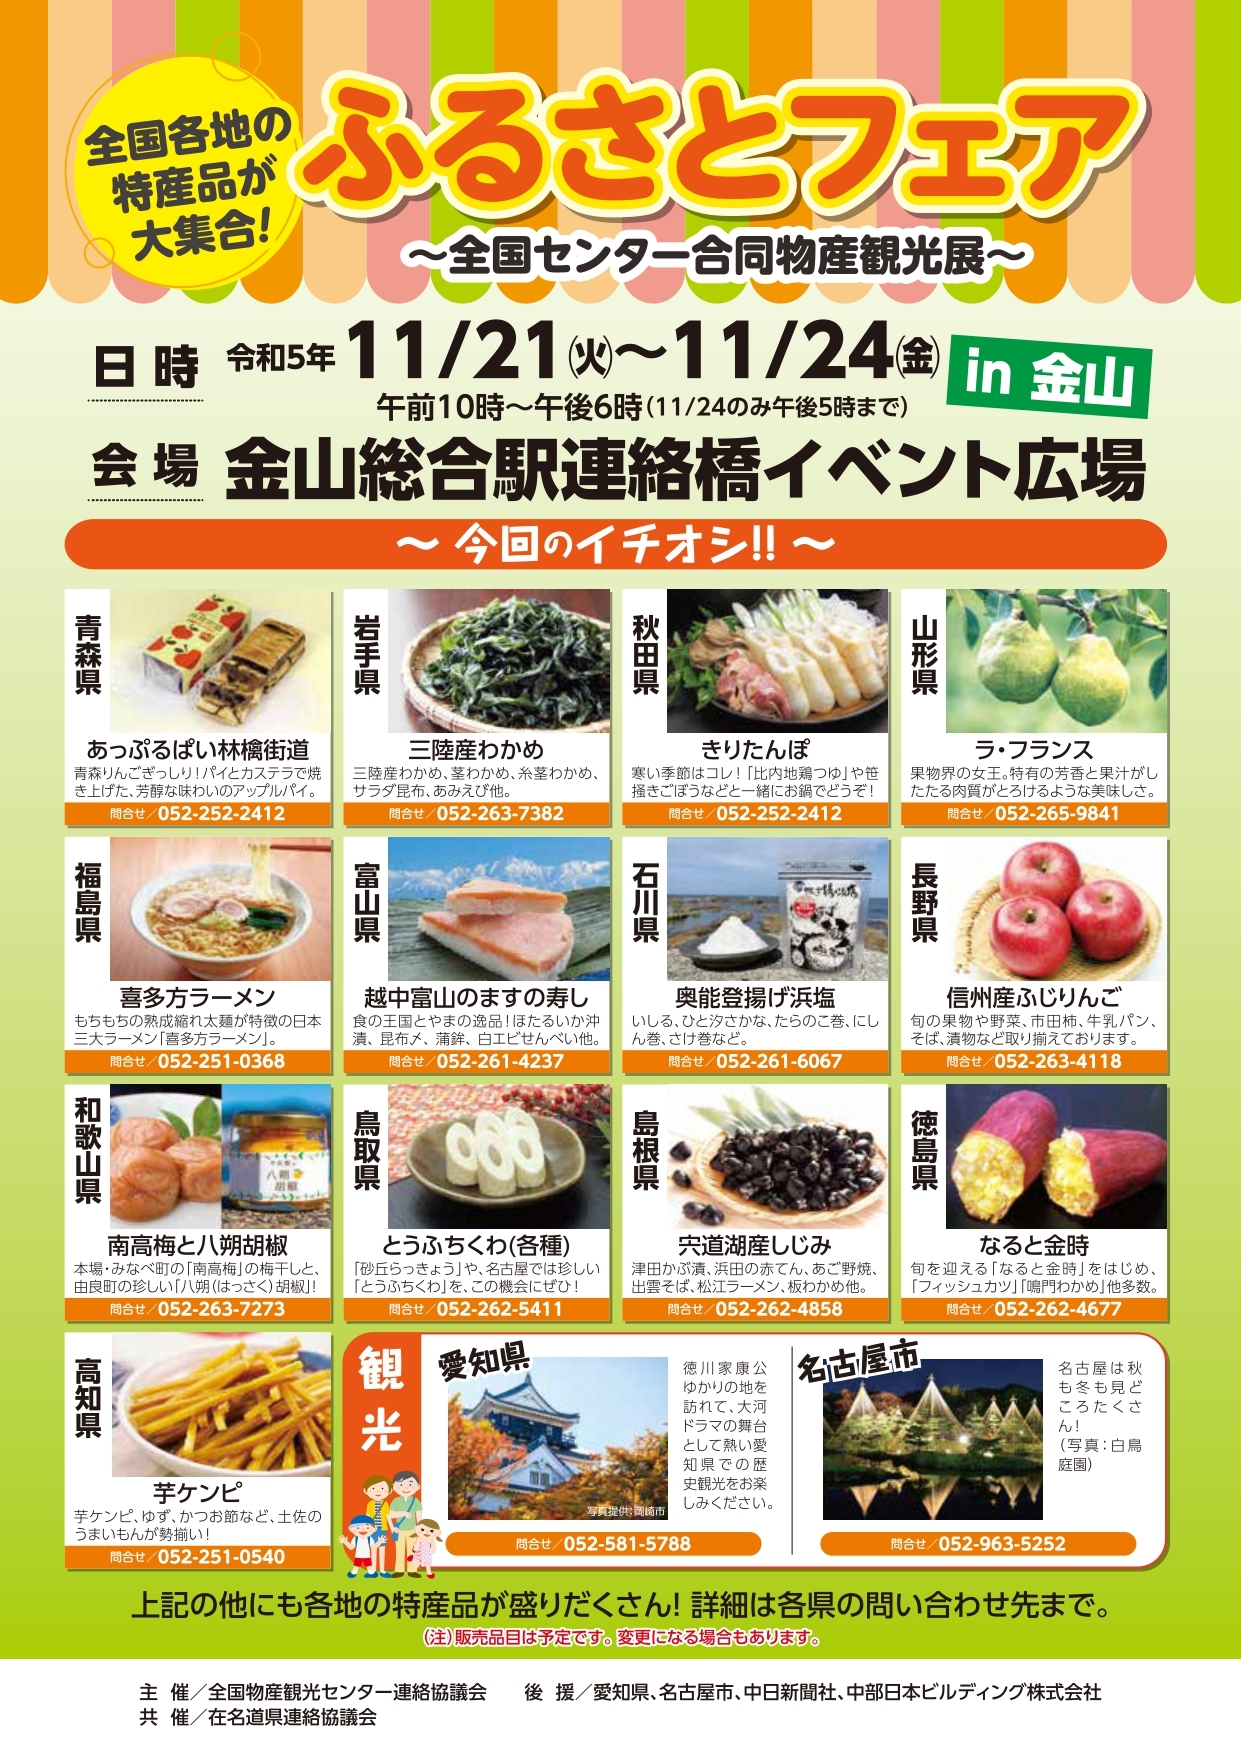 愛知県、名古屋市の観光パンフレットの配布も。